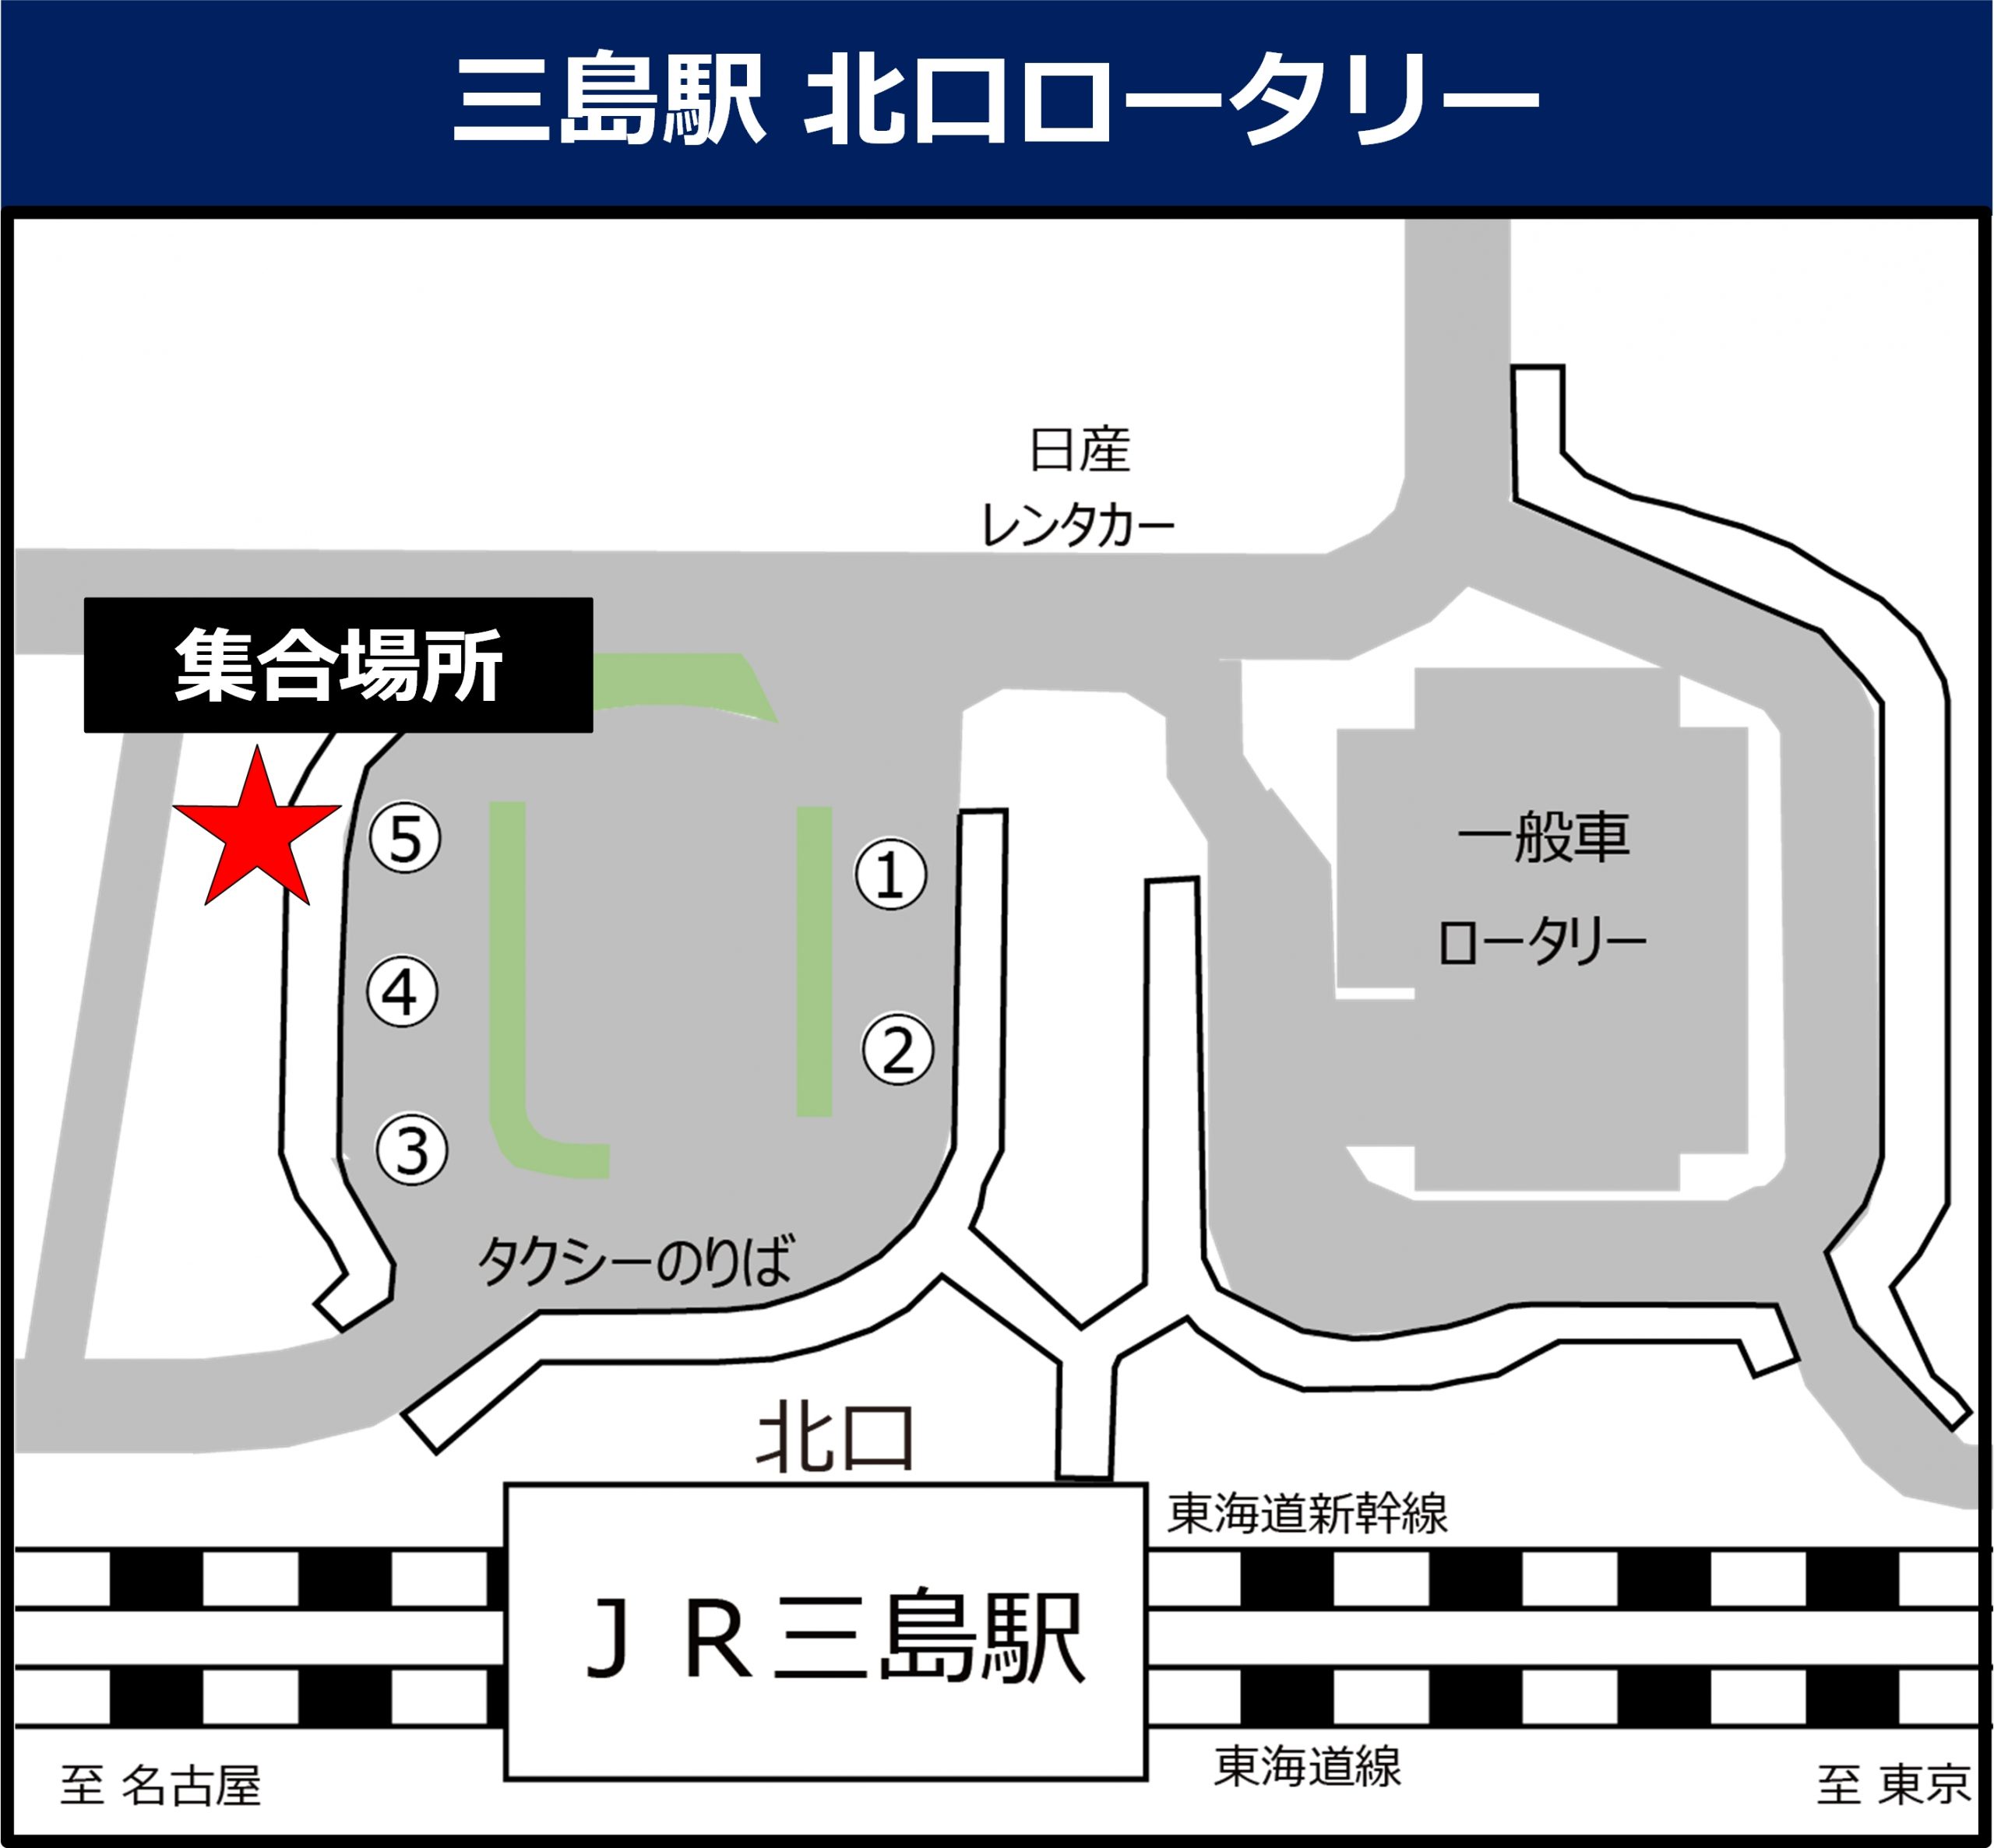 三島駅 北口ロータリーの地図